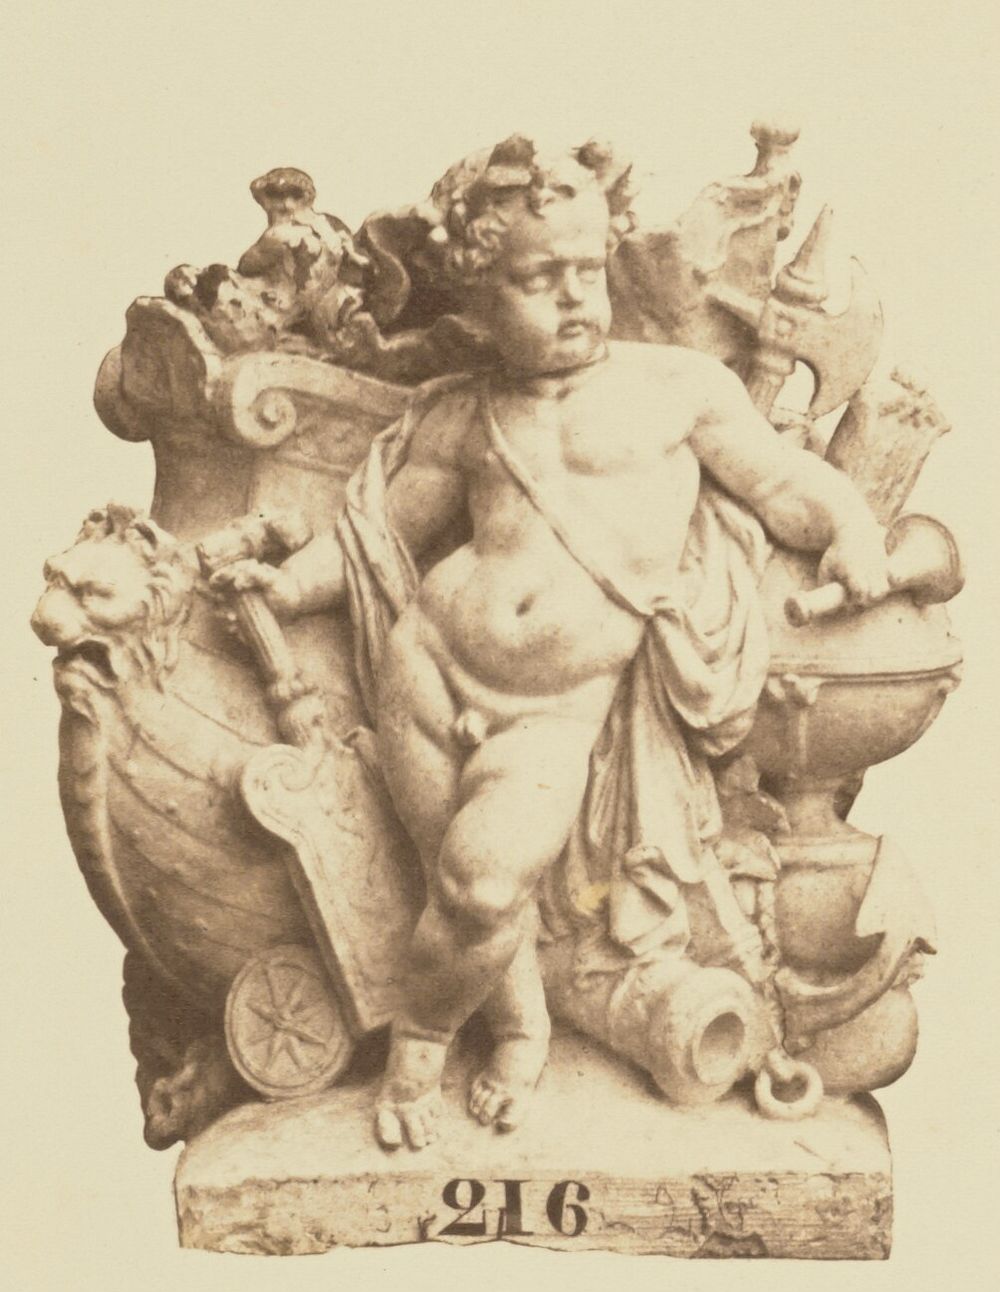 "La Marine", Sculpture by Jean-Baptiste Carpeaux, Decoration of the Louvre, Paris by Édouard Baldus